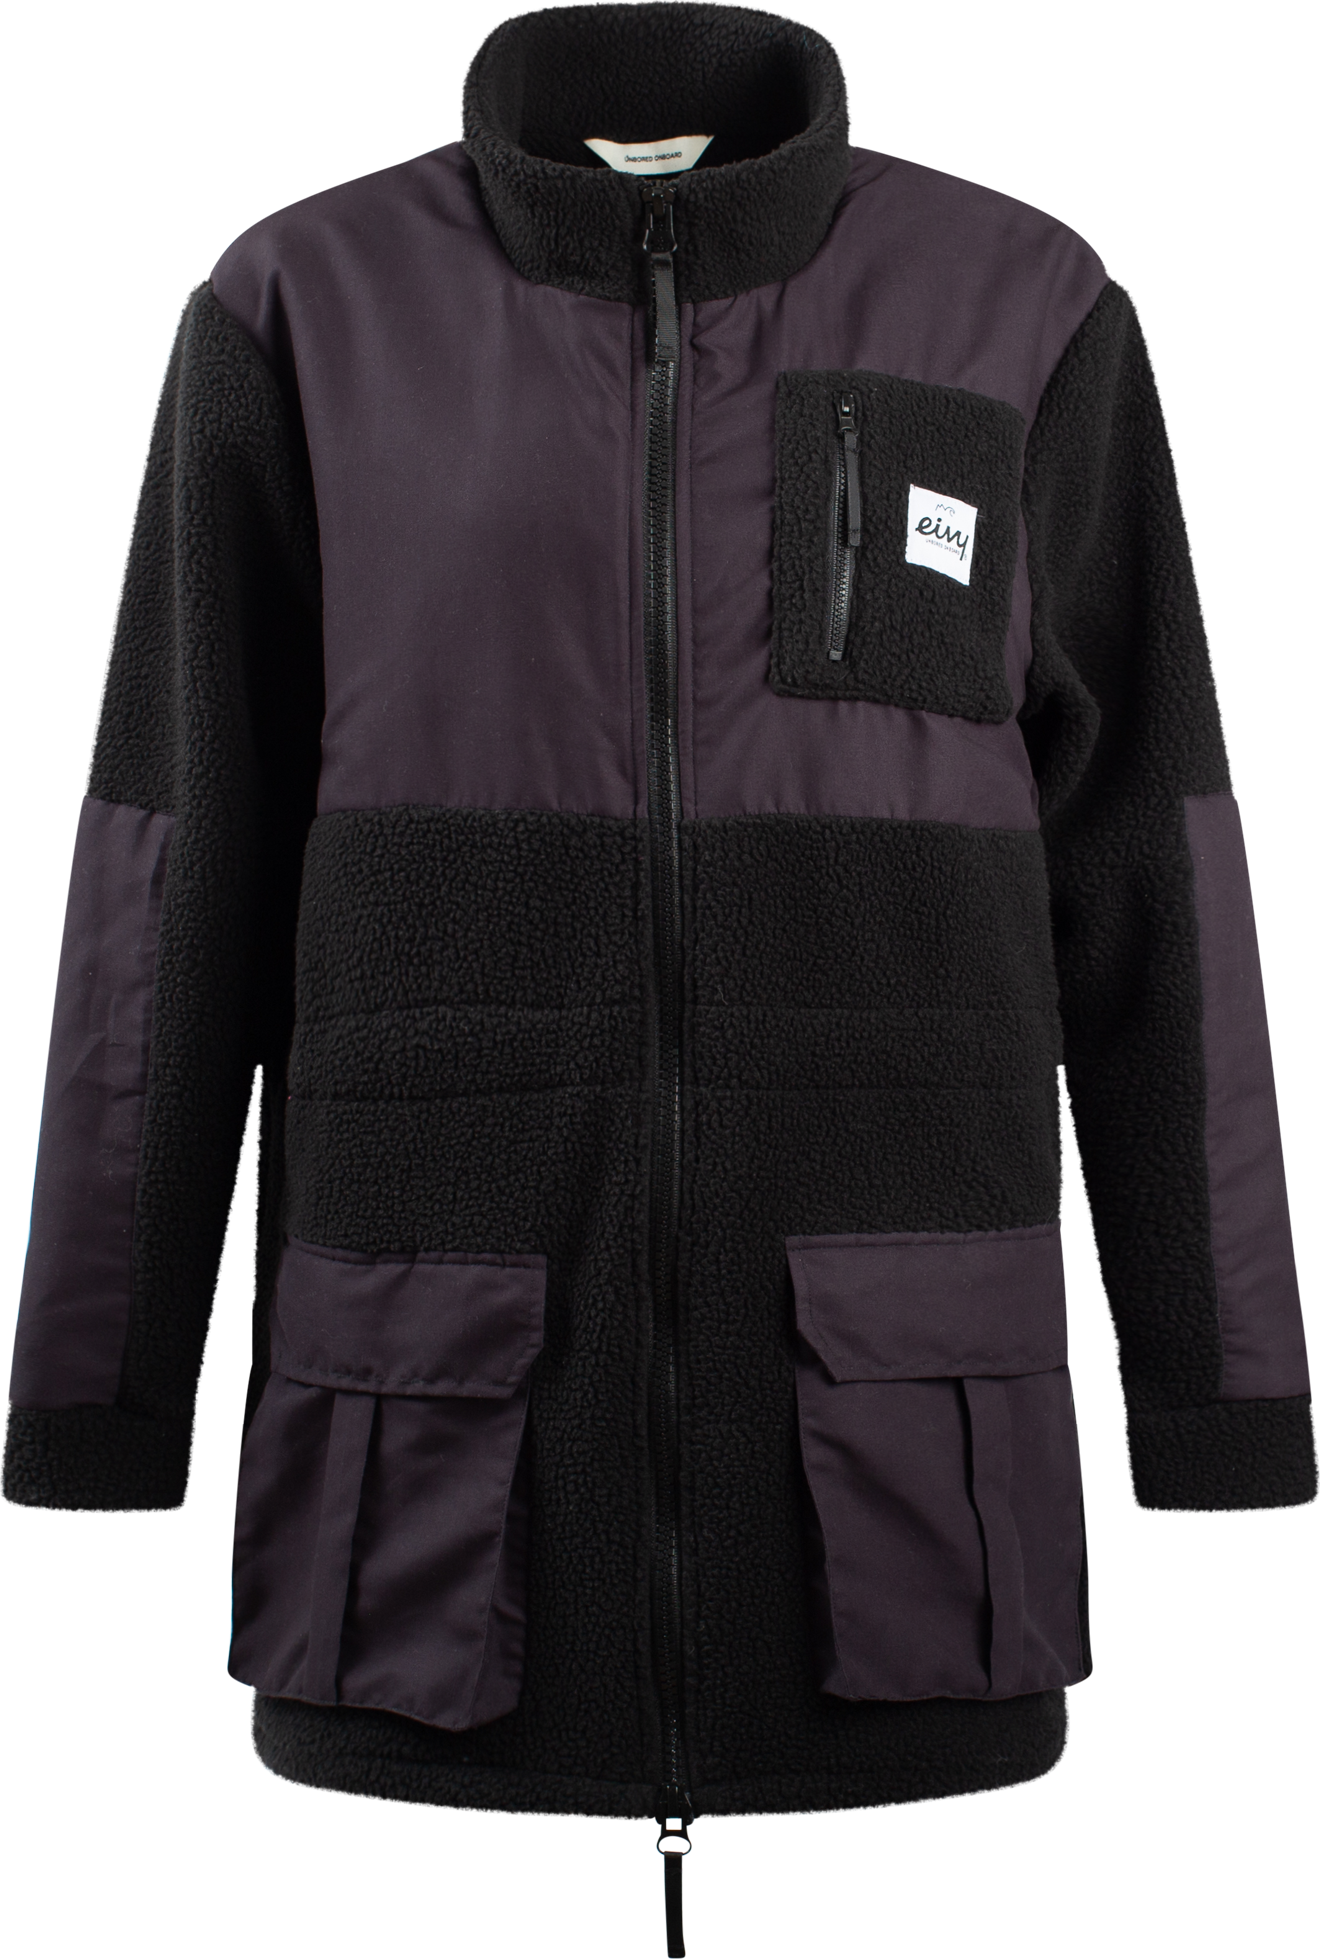 Eivy Women's Field Sherpa Jacket Black